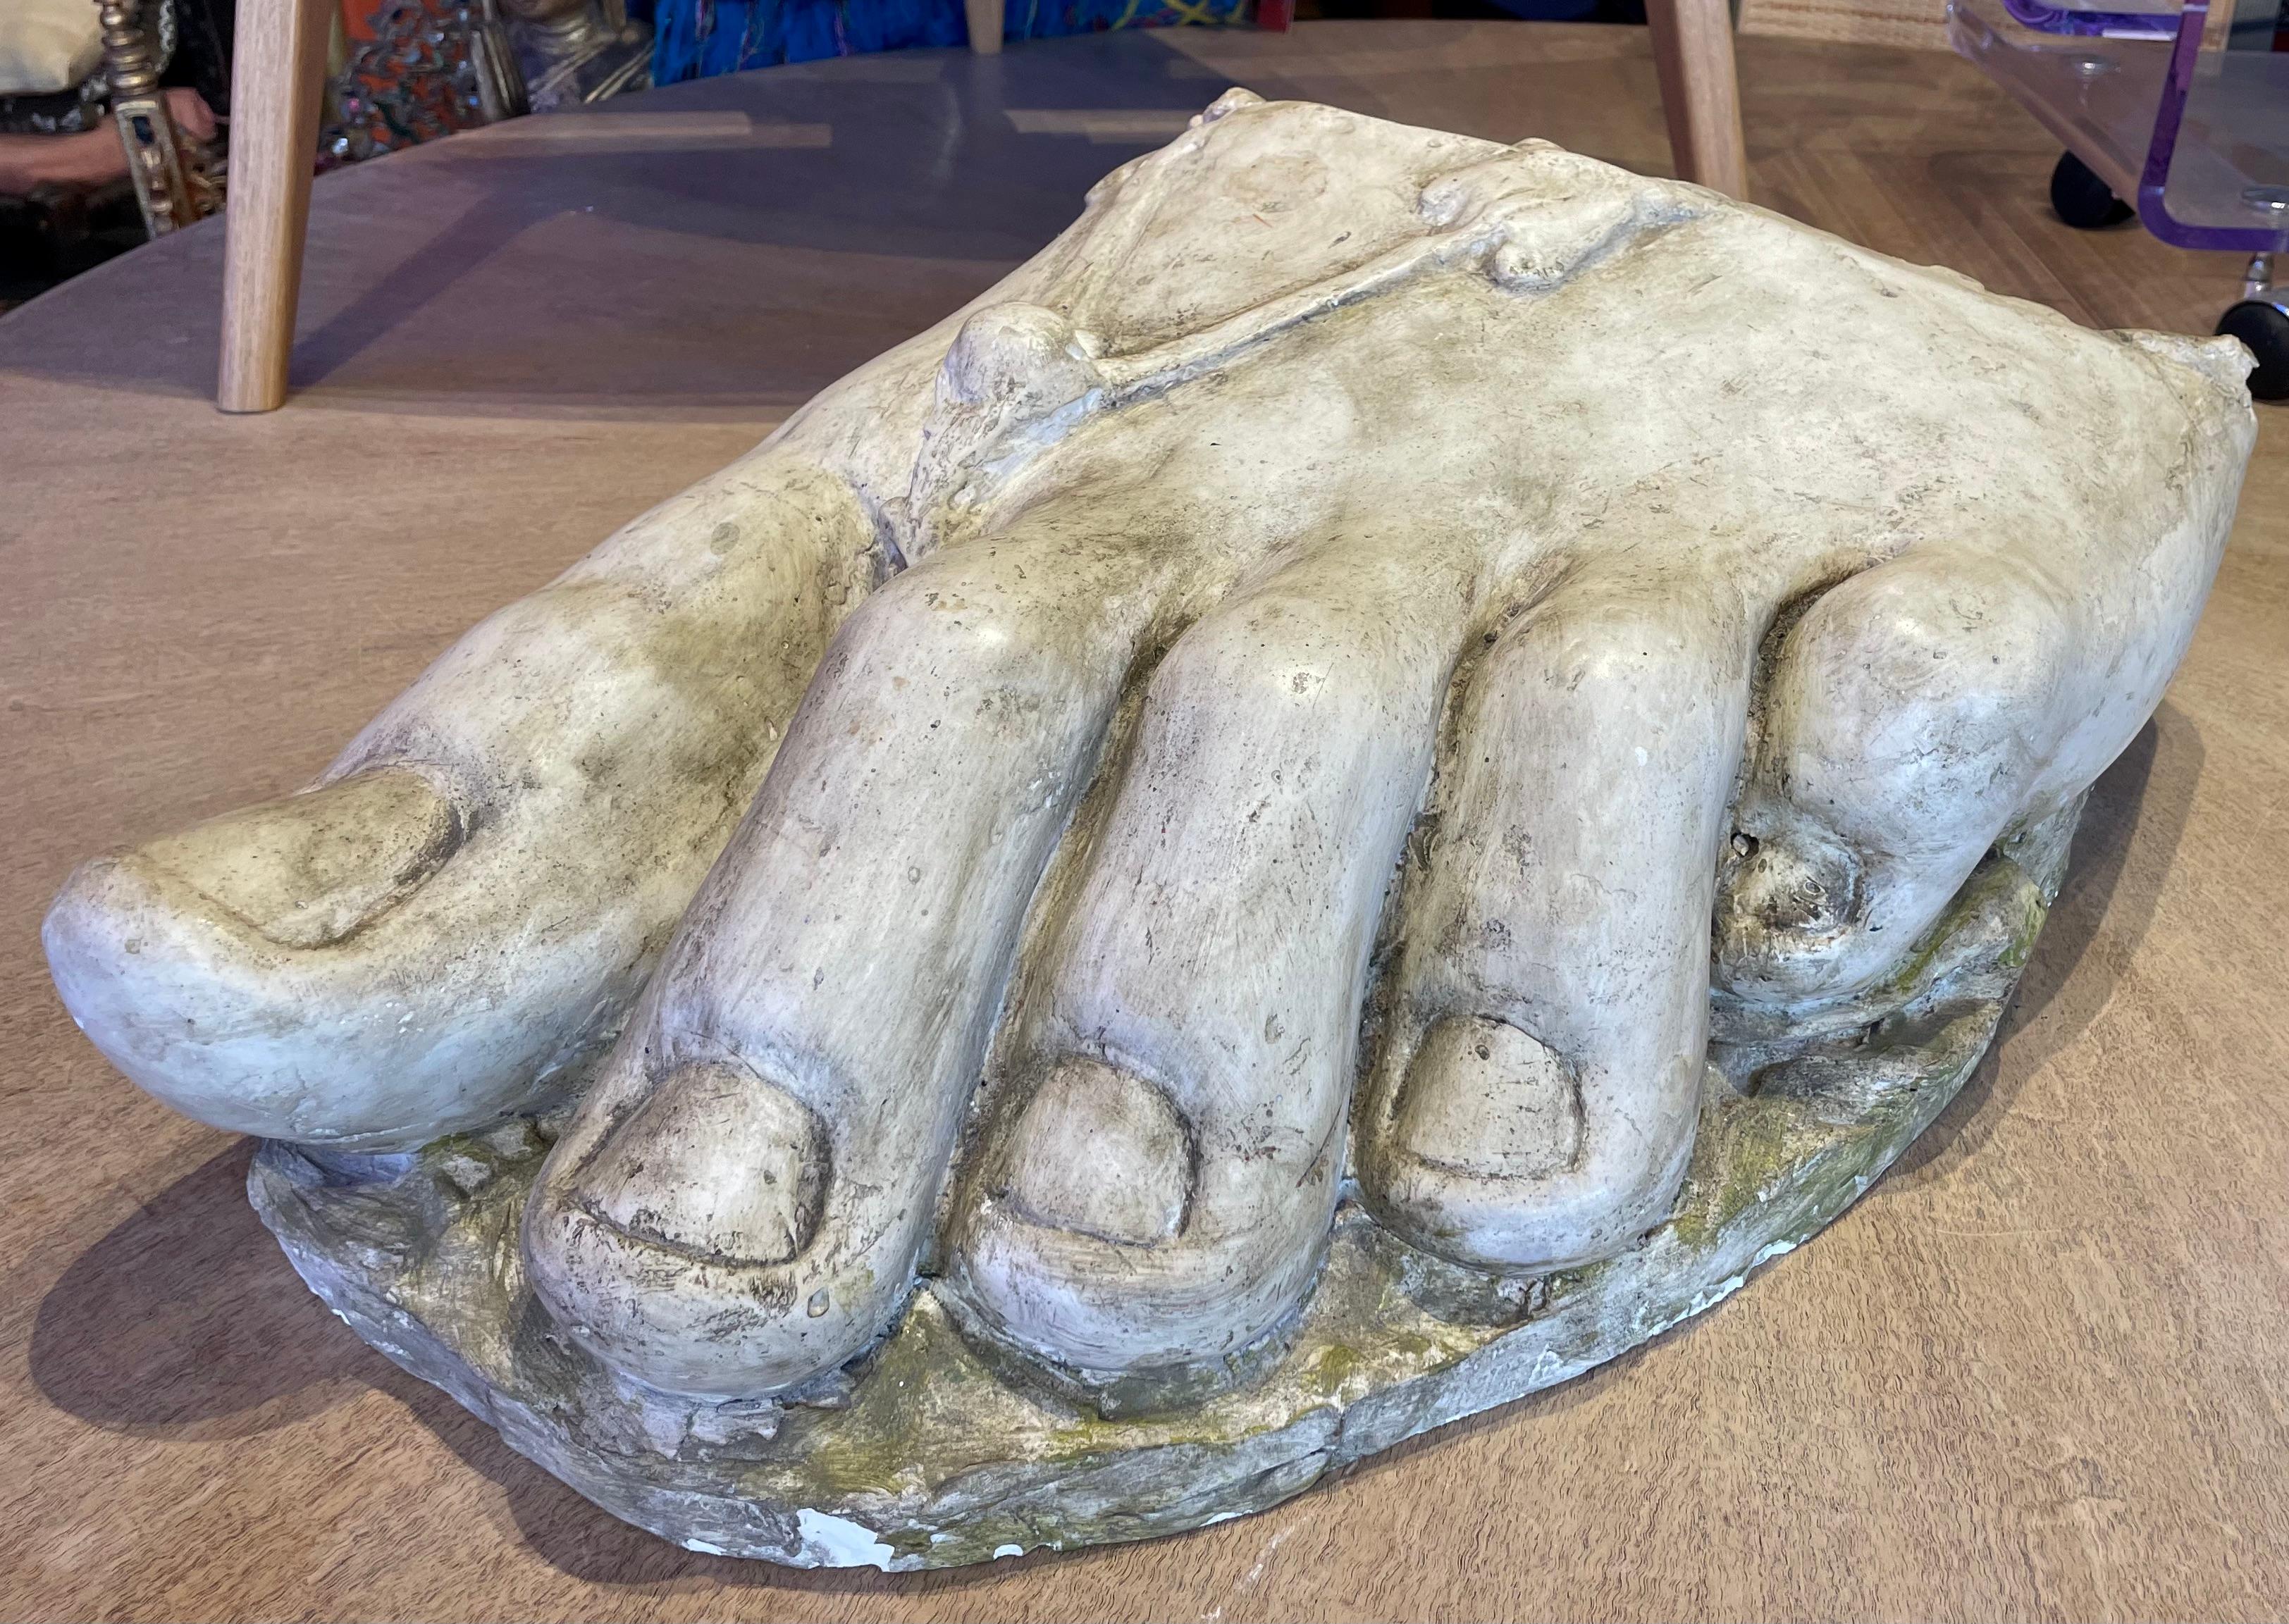 Riesiges akademisches Gipsfragment eines römischen Fußes, der eine Sandale trägt. Schöne Patina und Details.
19. Jahrhundert.